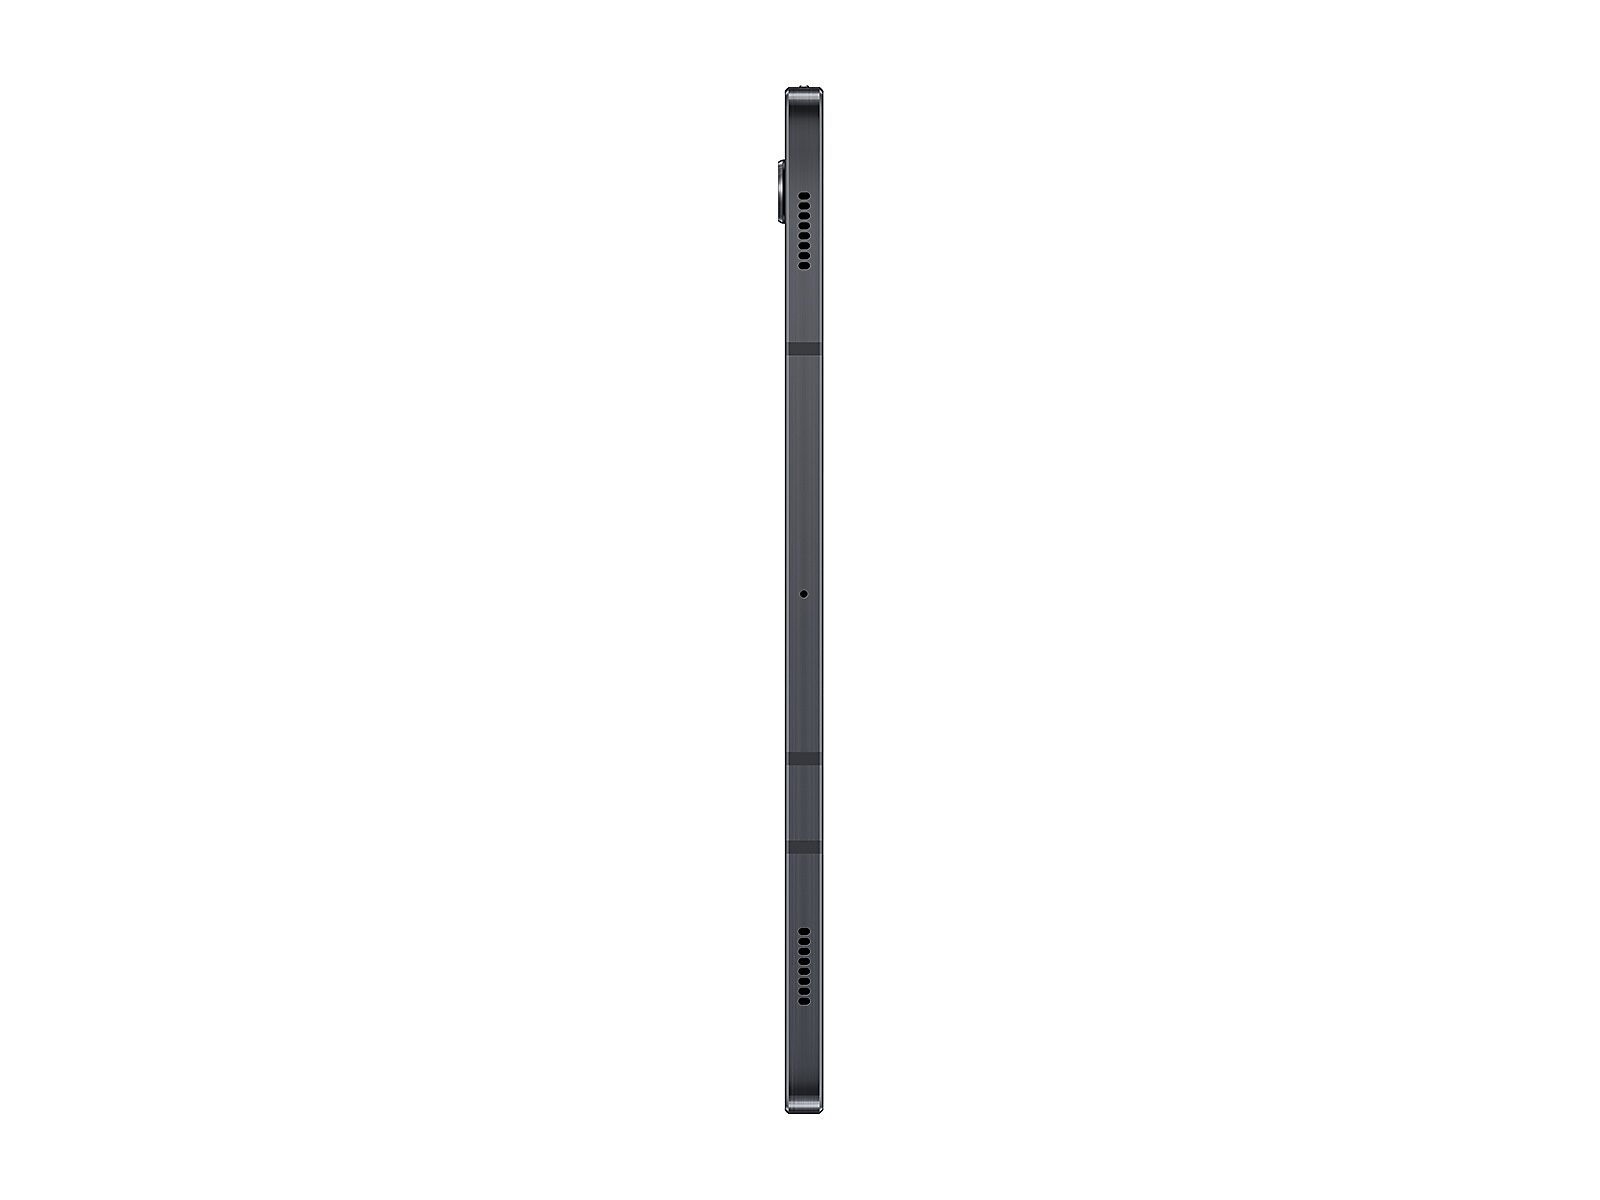 Samsung Galaxy Tab S7, 128GB in Mystic Black (Verizon)